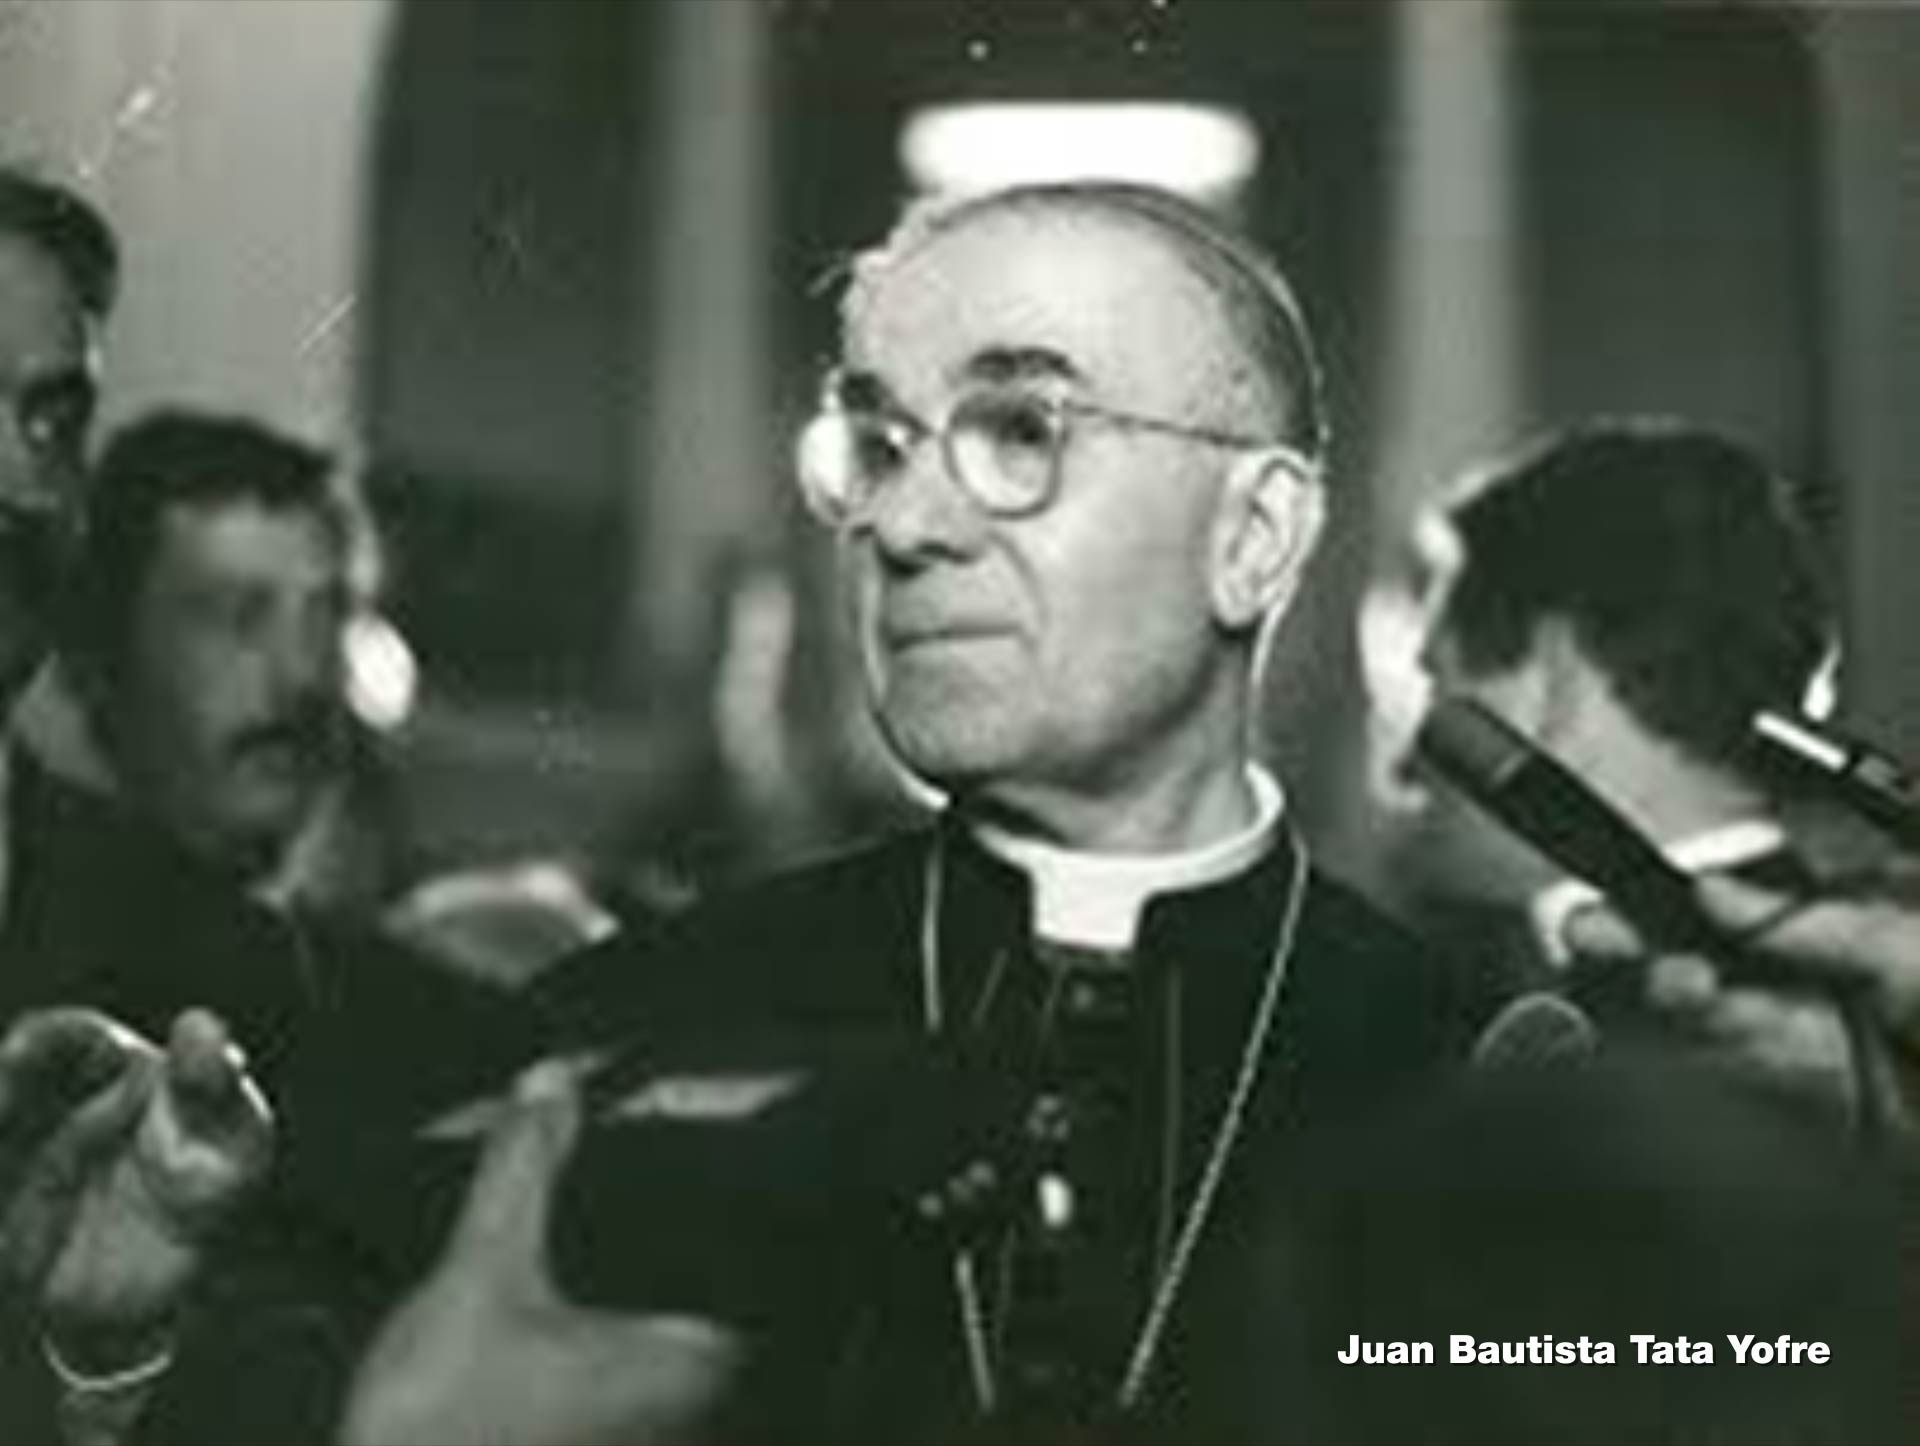 Cardenal Antonio Samoré